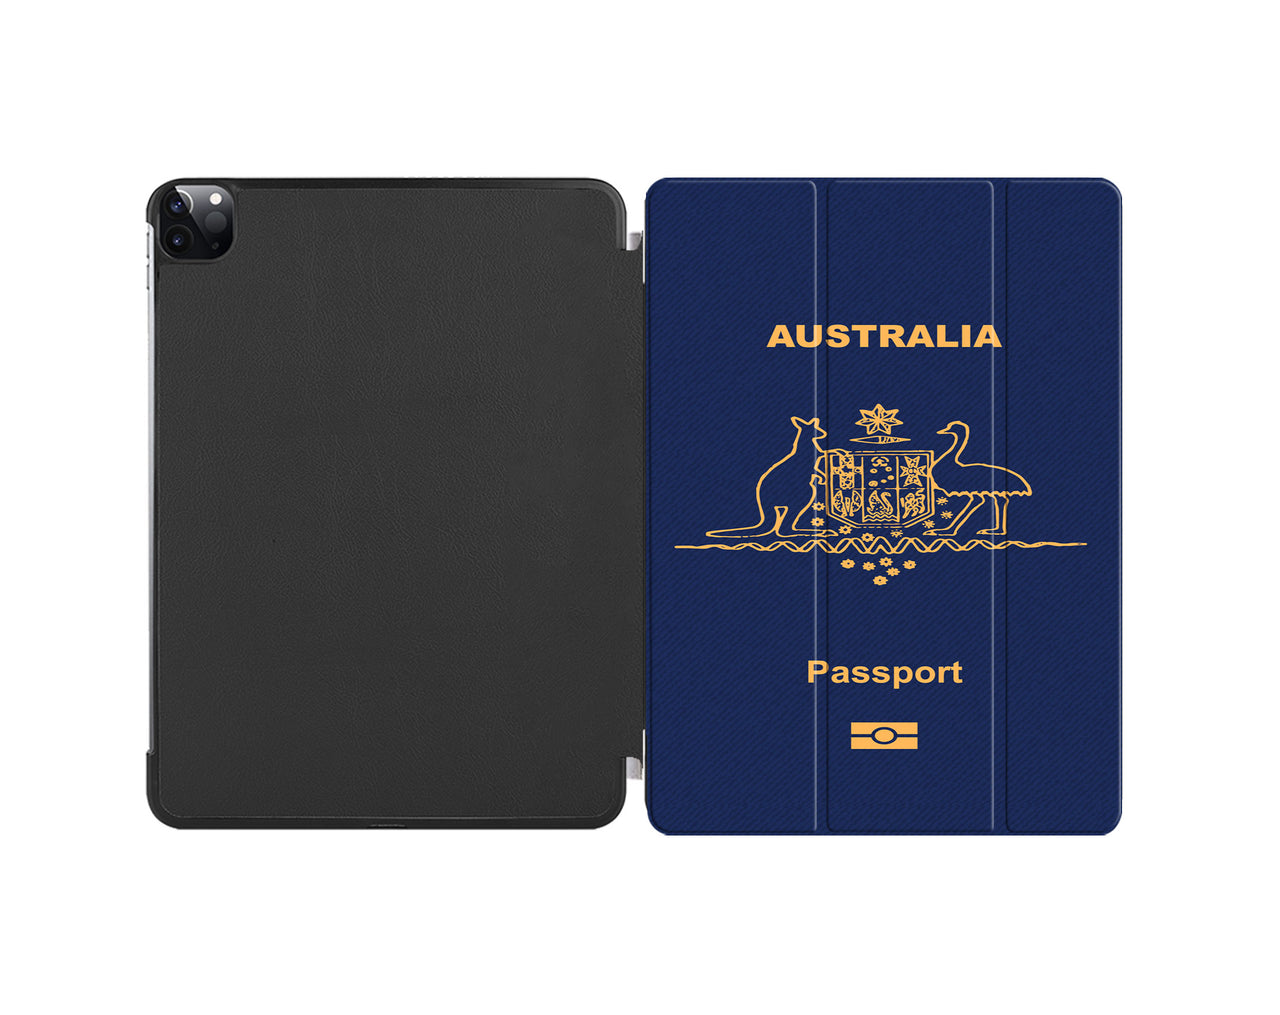 Australia Passport Designed iPad Cases